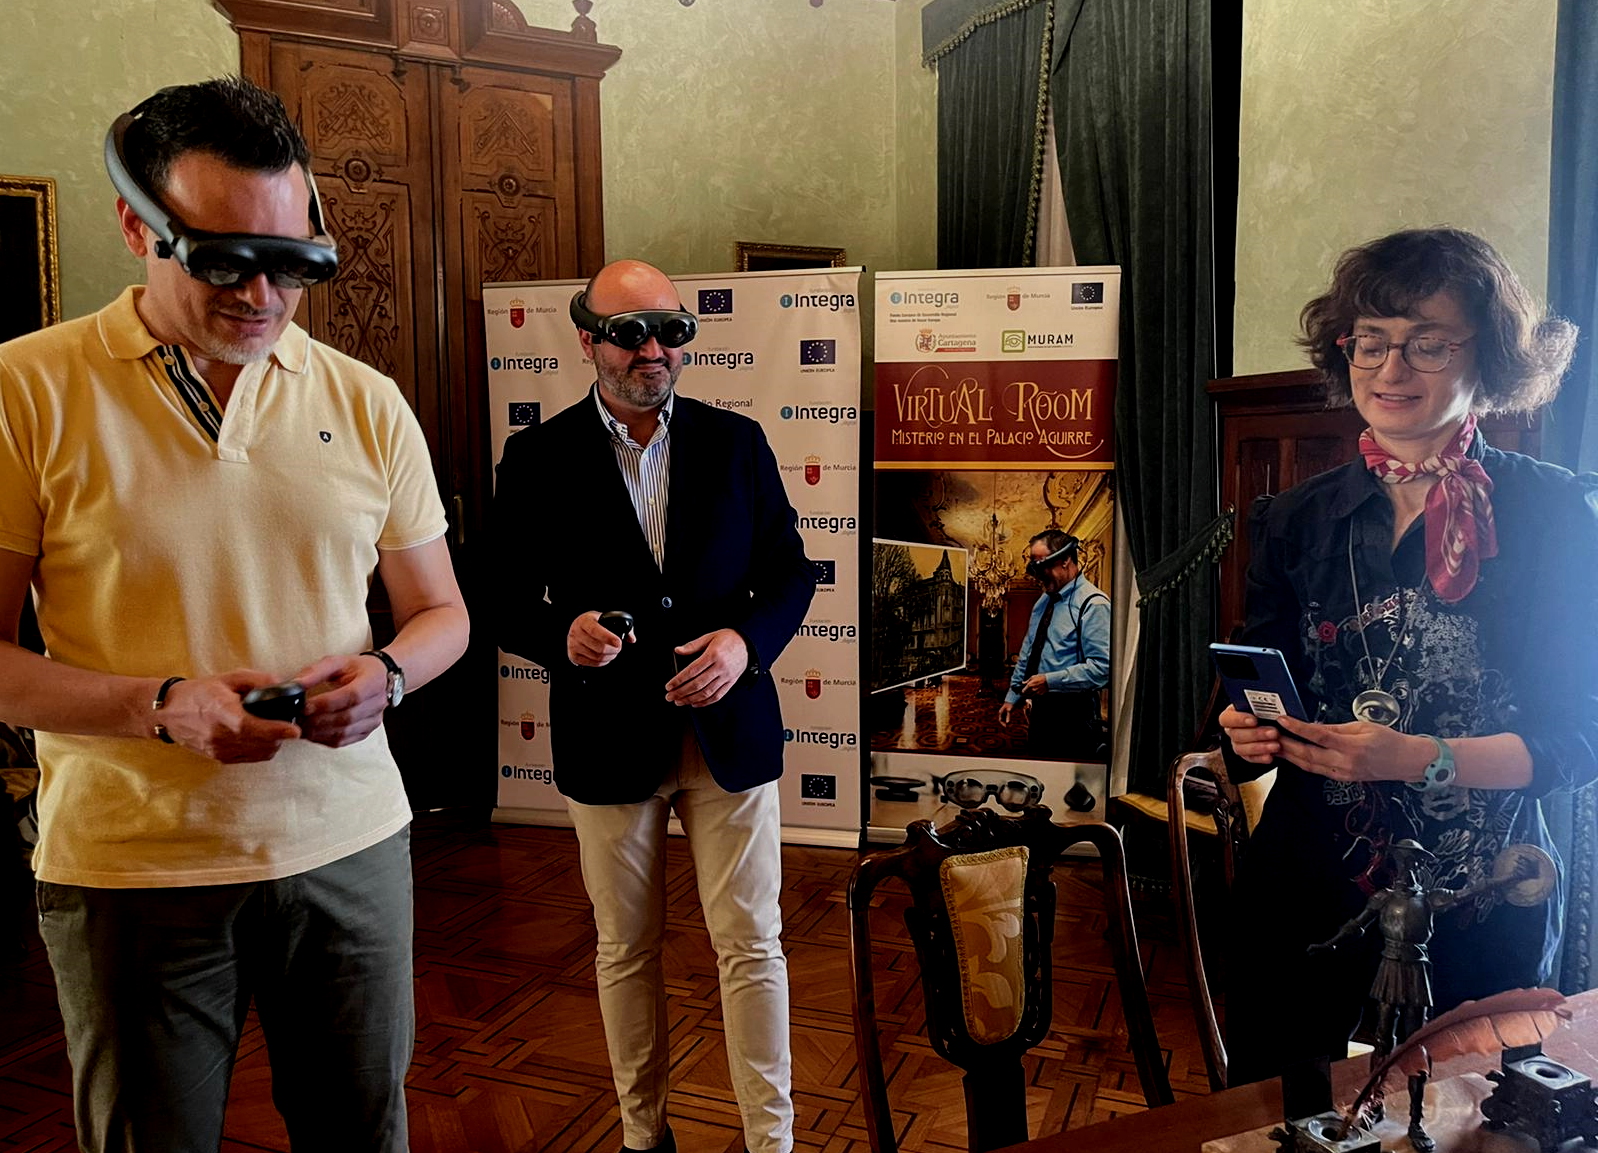 Presentación de la novedosa aplicación de realidad mixta que sumergirá a los usuarios en la Cartagena modernista a través de una 'escape room' ambientada en el Palacio Aguirre